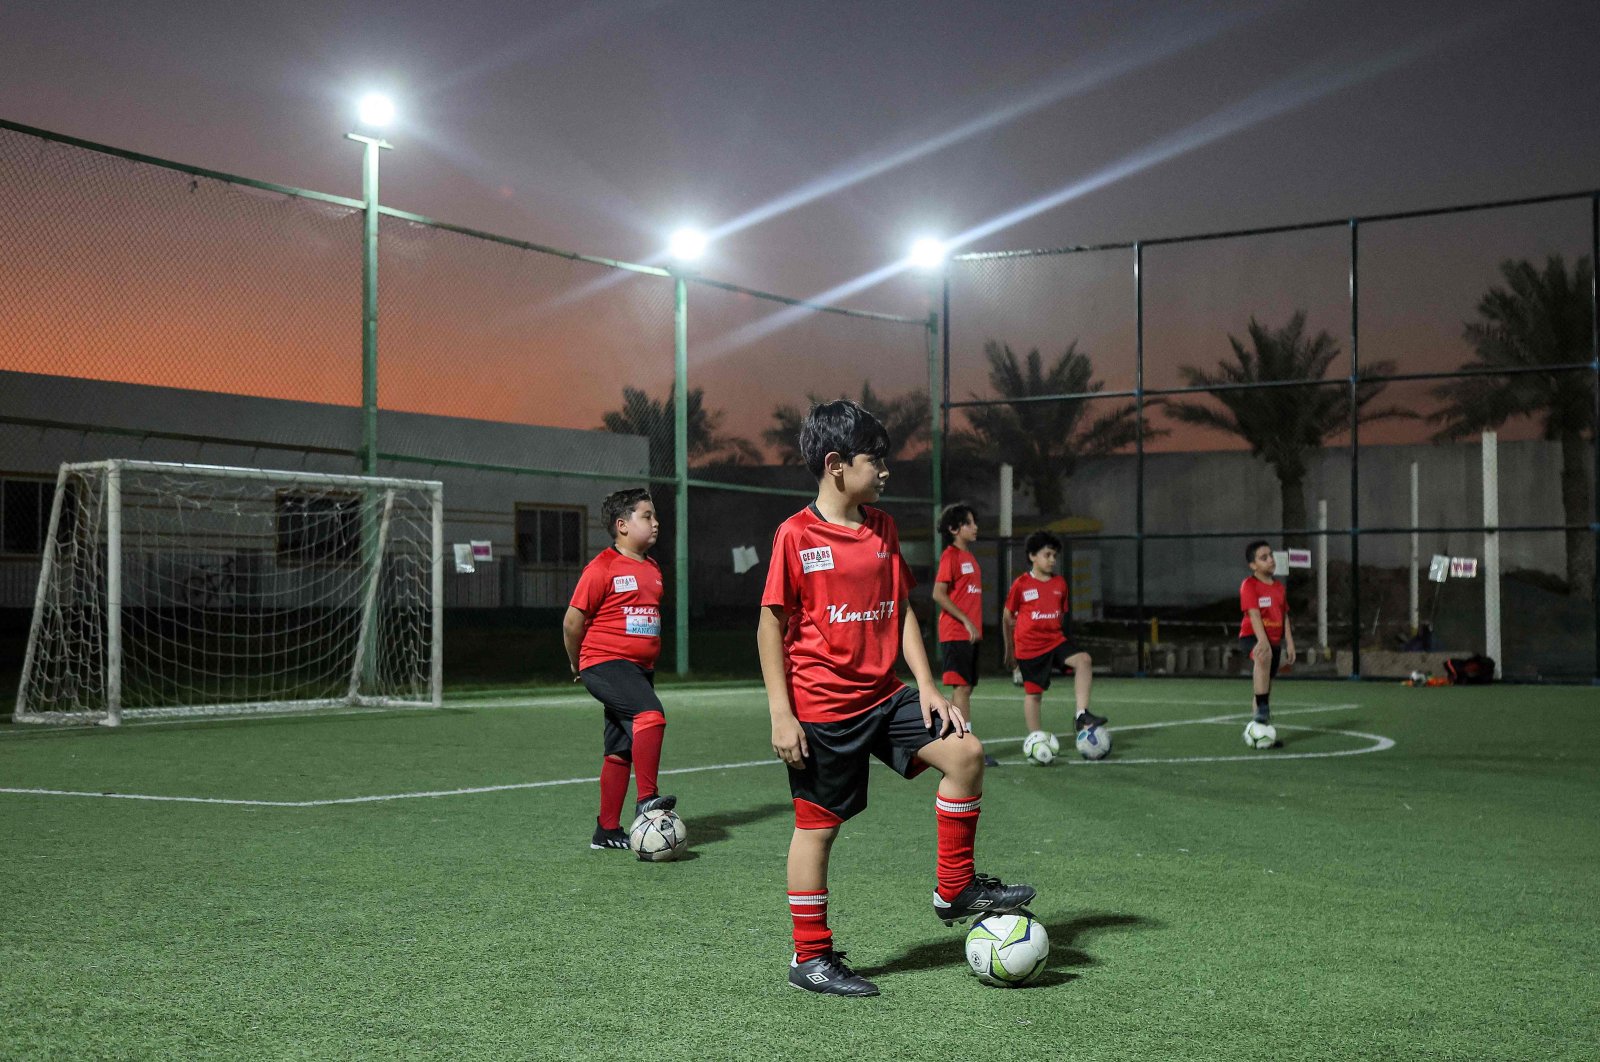 Kegembiraan Piala Dunia menginspirasi anak-anak di Qatar untuk menghadapi obesitas